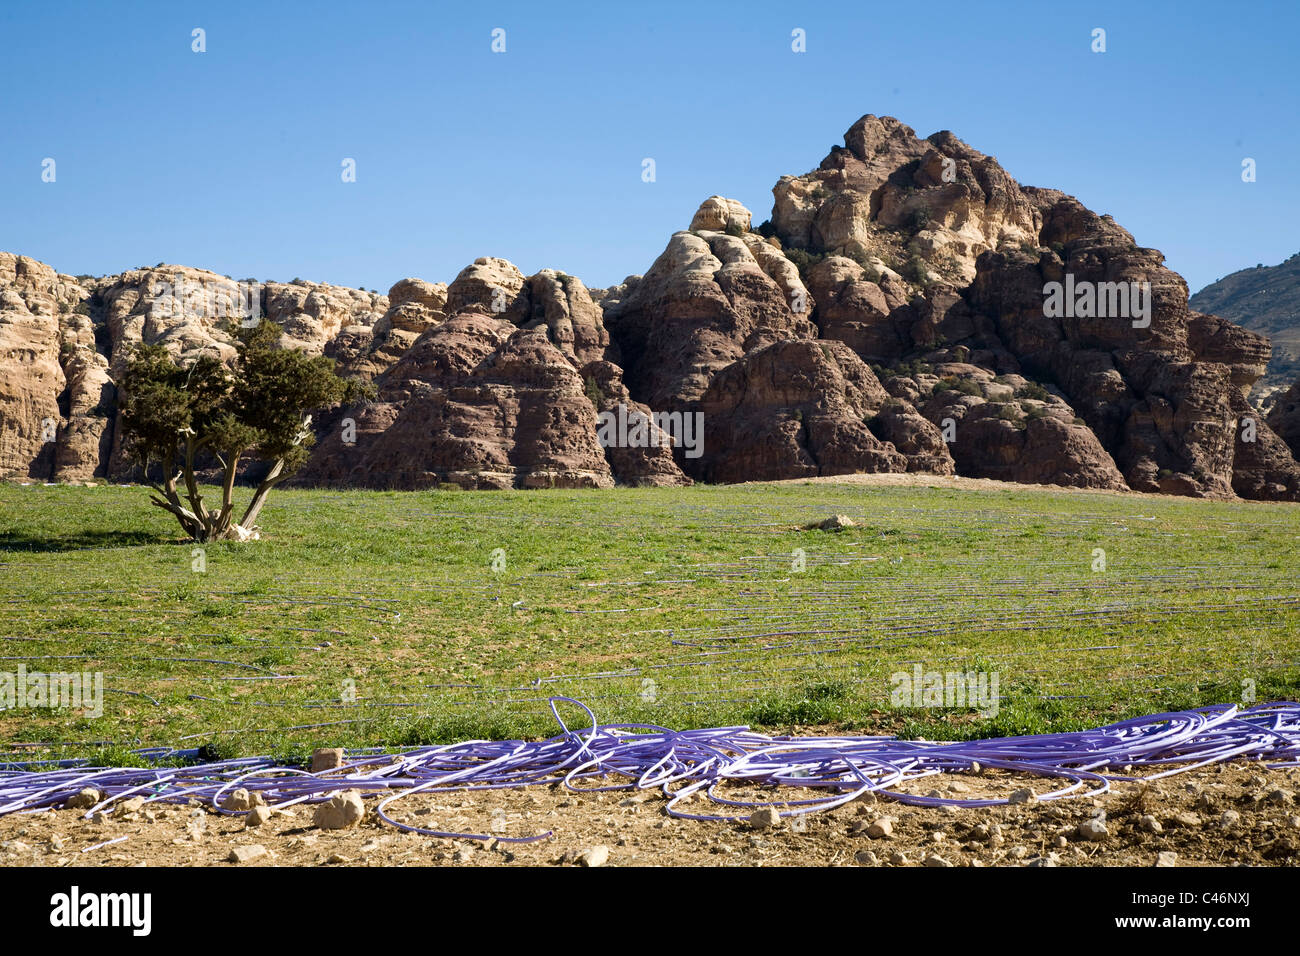 Fotografia di erba verde in mezzo al deserto giordano Foto Stock